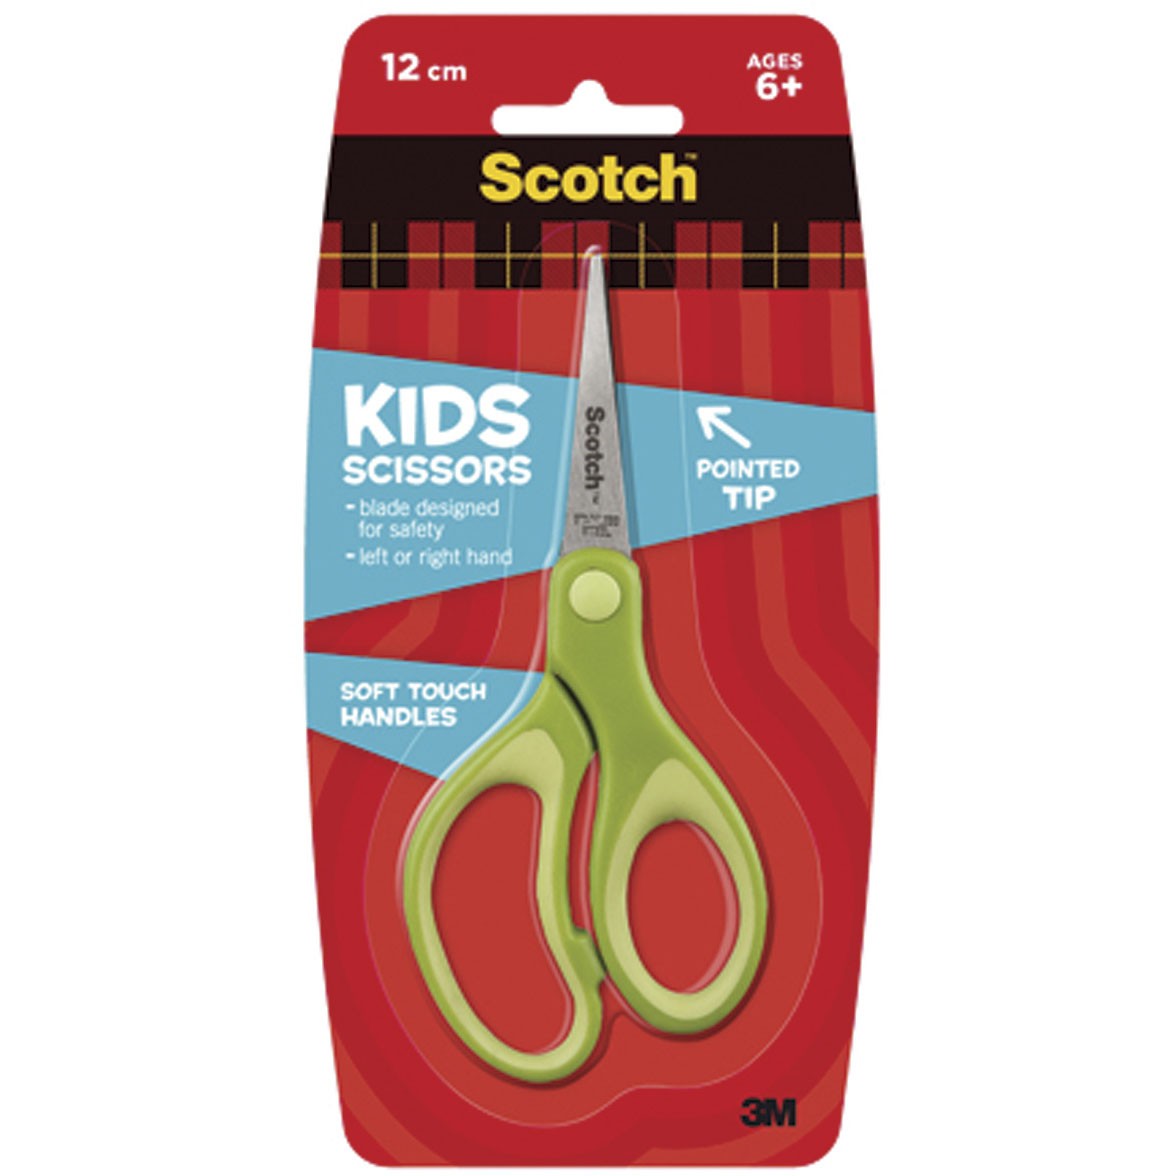 Scotch 1442P Kids 12 cm saks i grøn